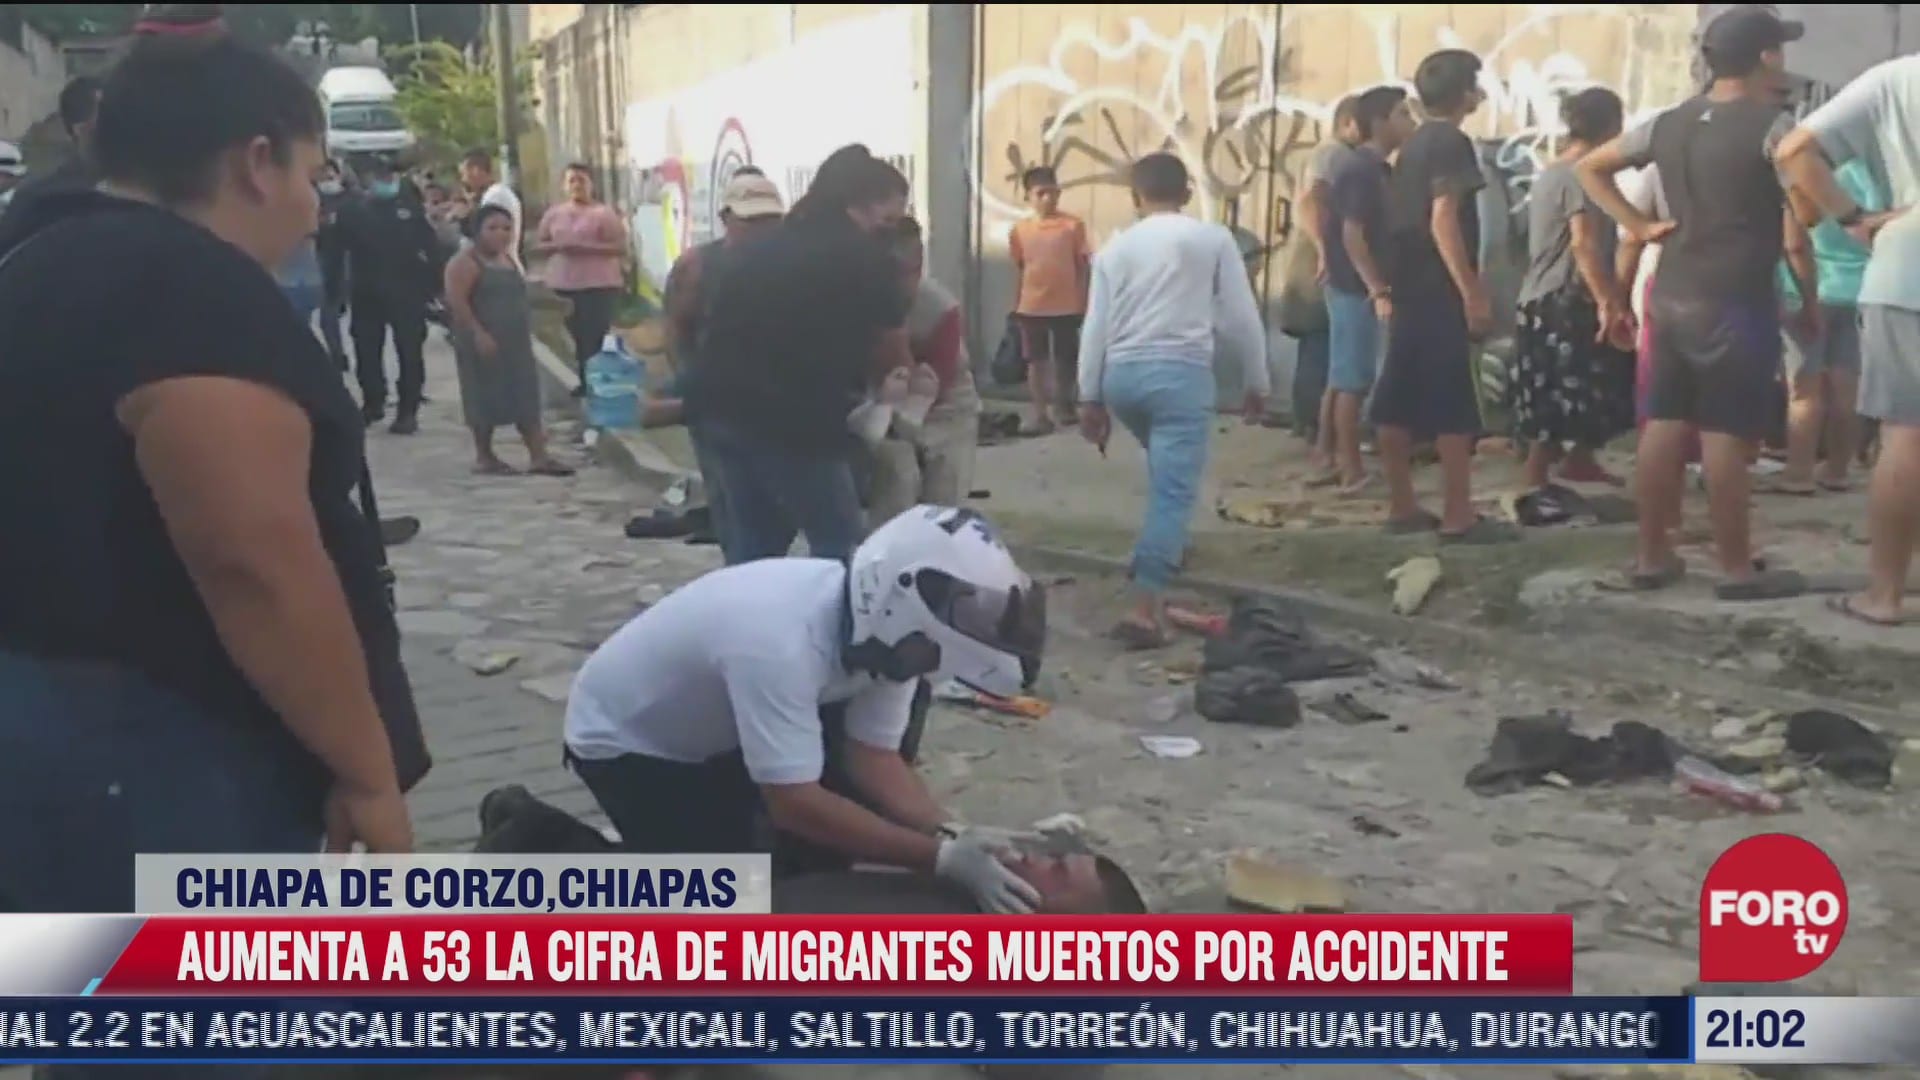 asi fue el accidente que dejo al menos 53 migrantes fallecidos en chiapas